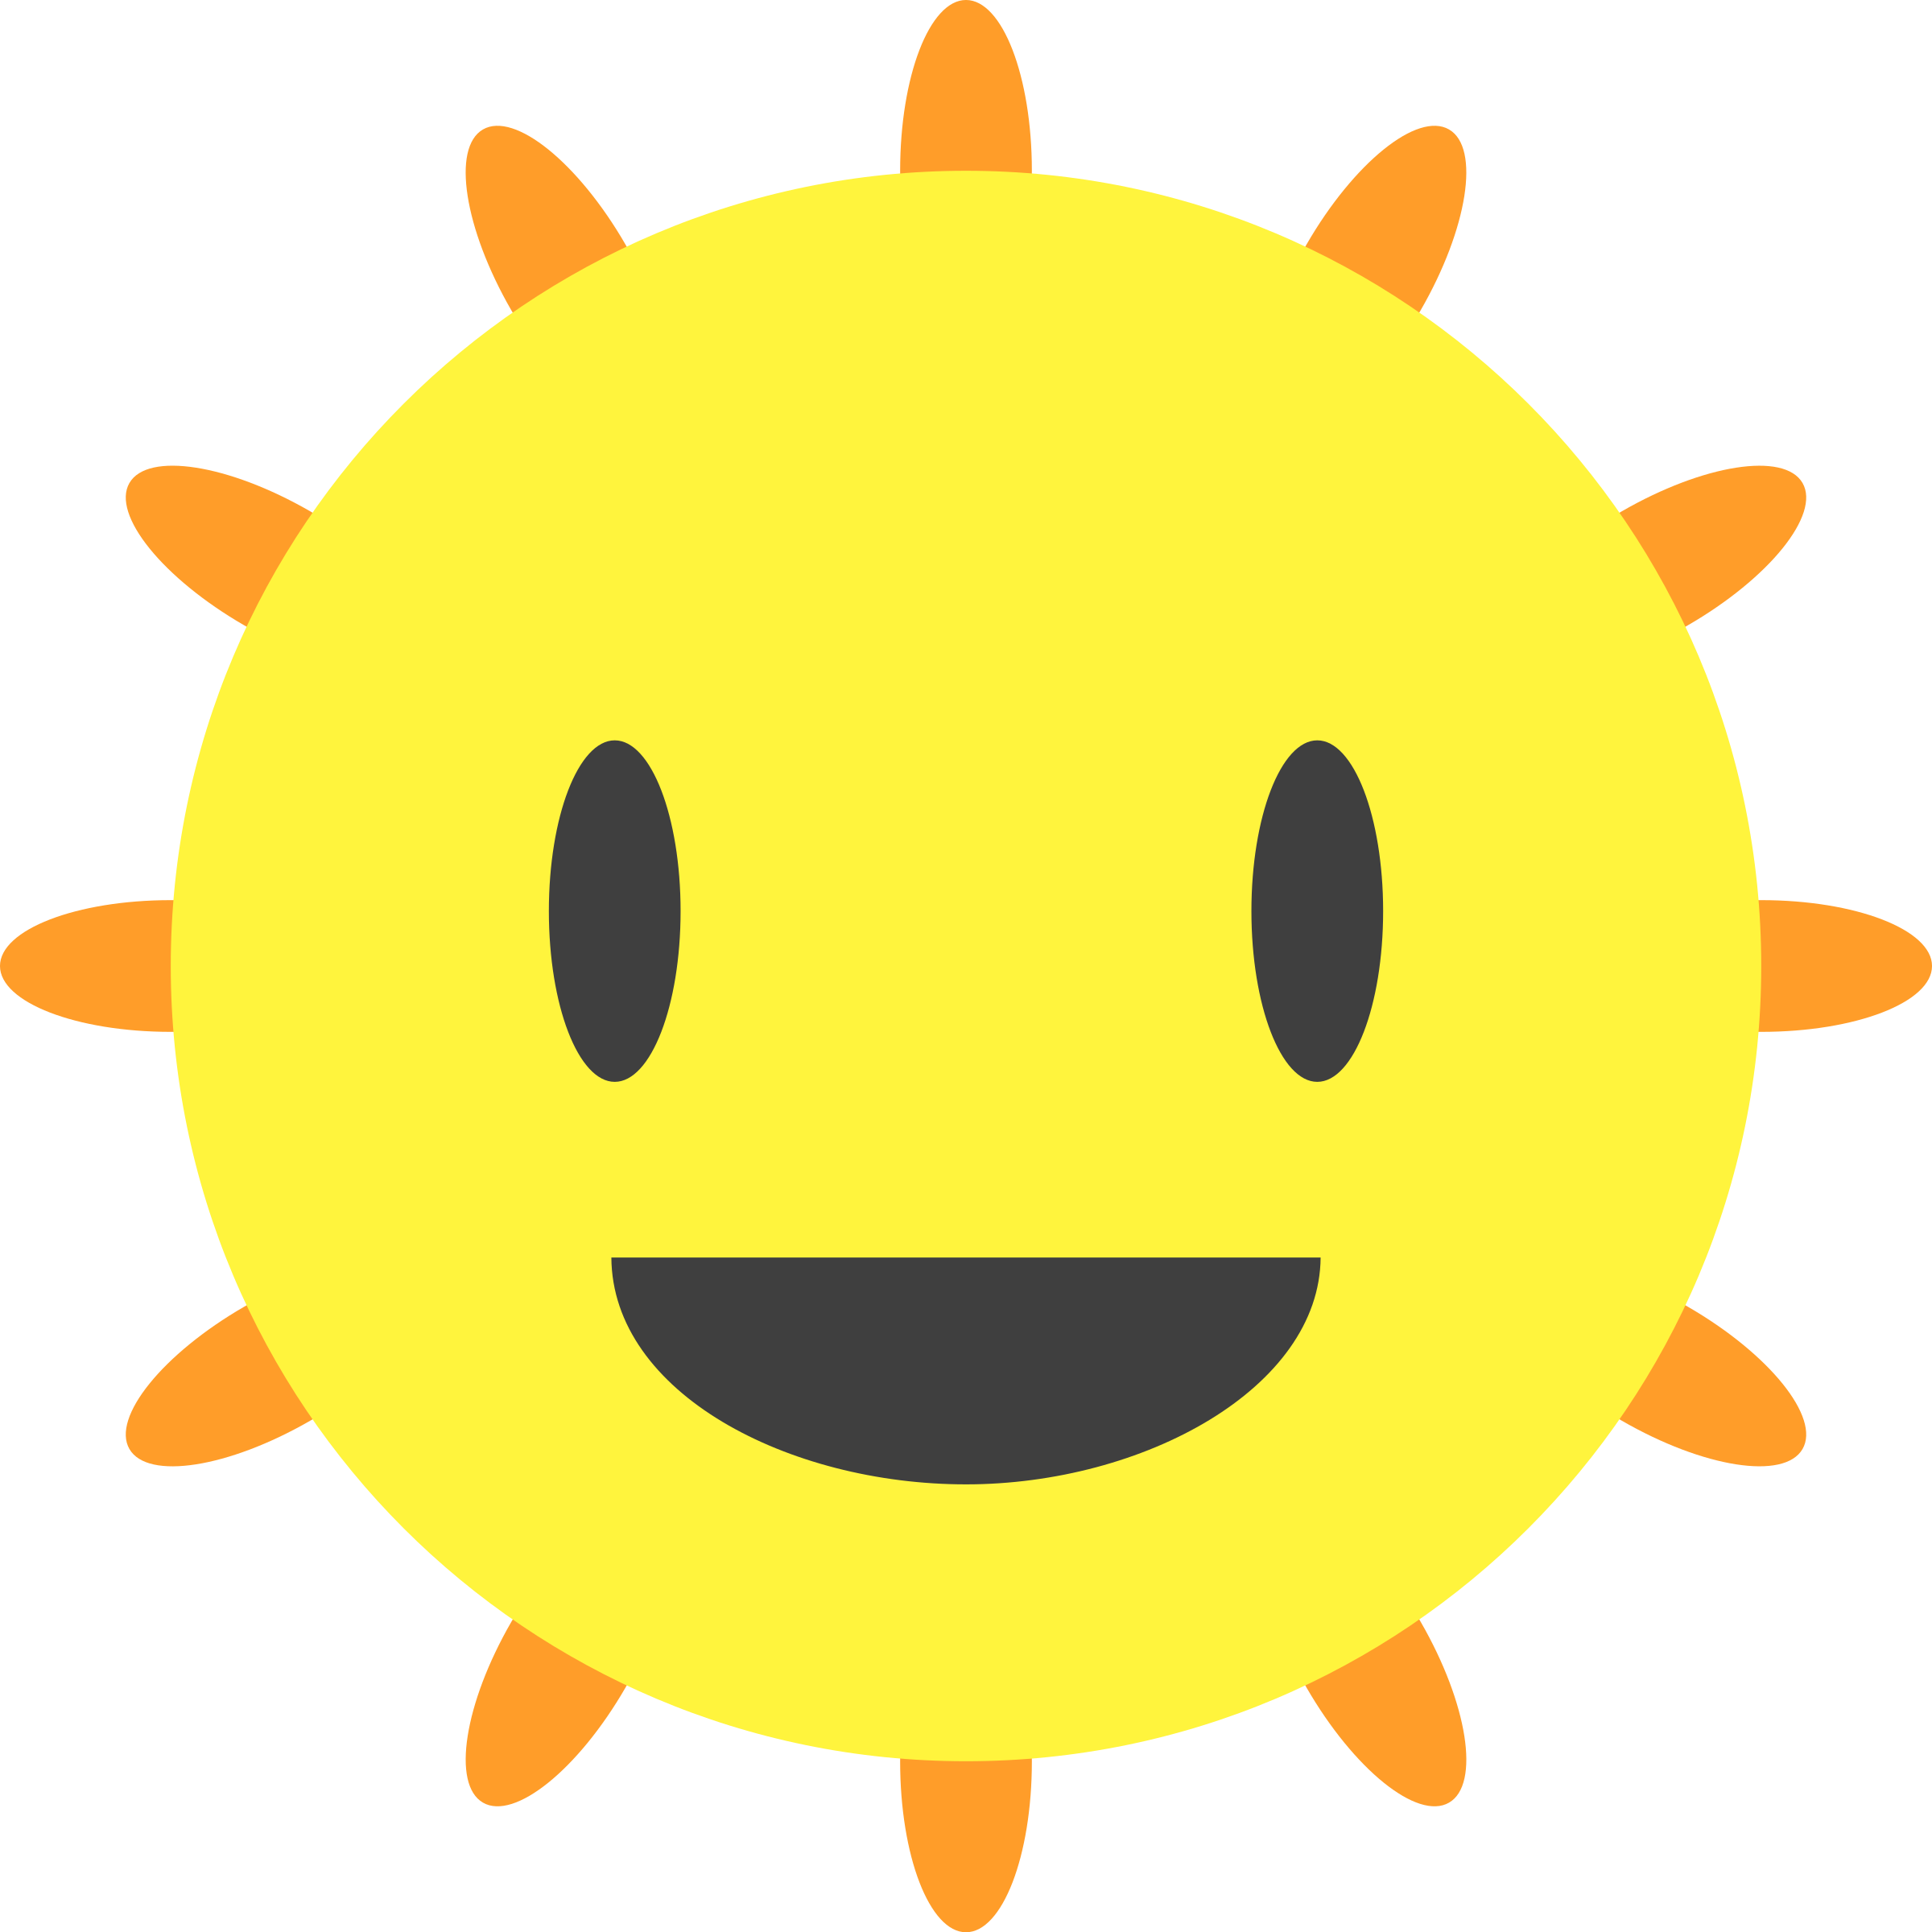 Clipart - Happy Sun